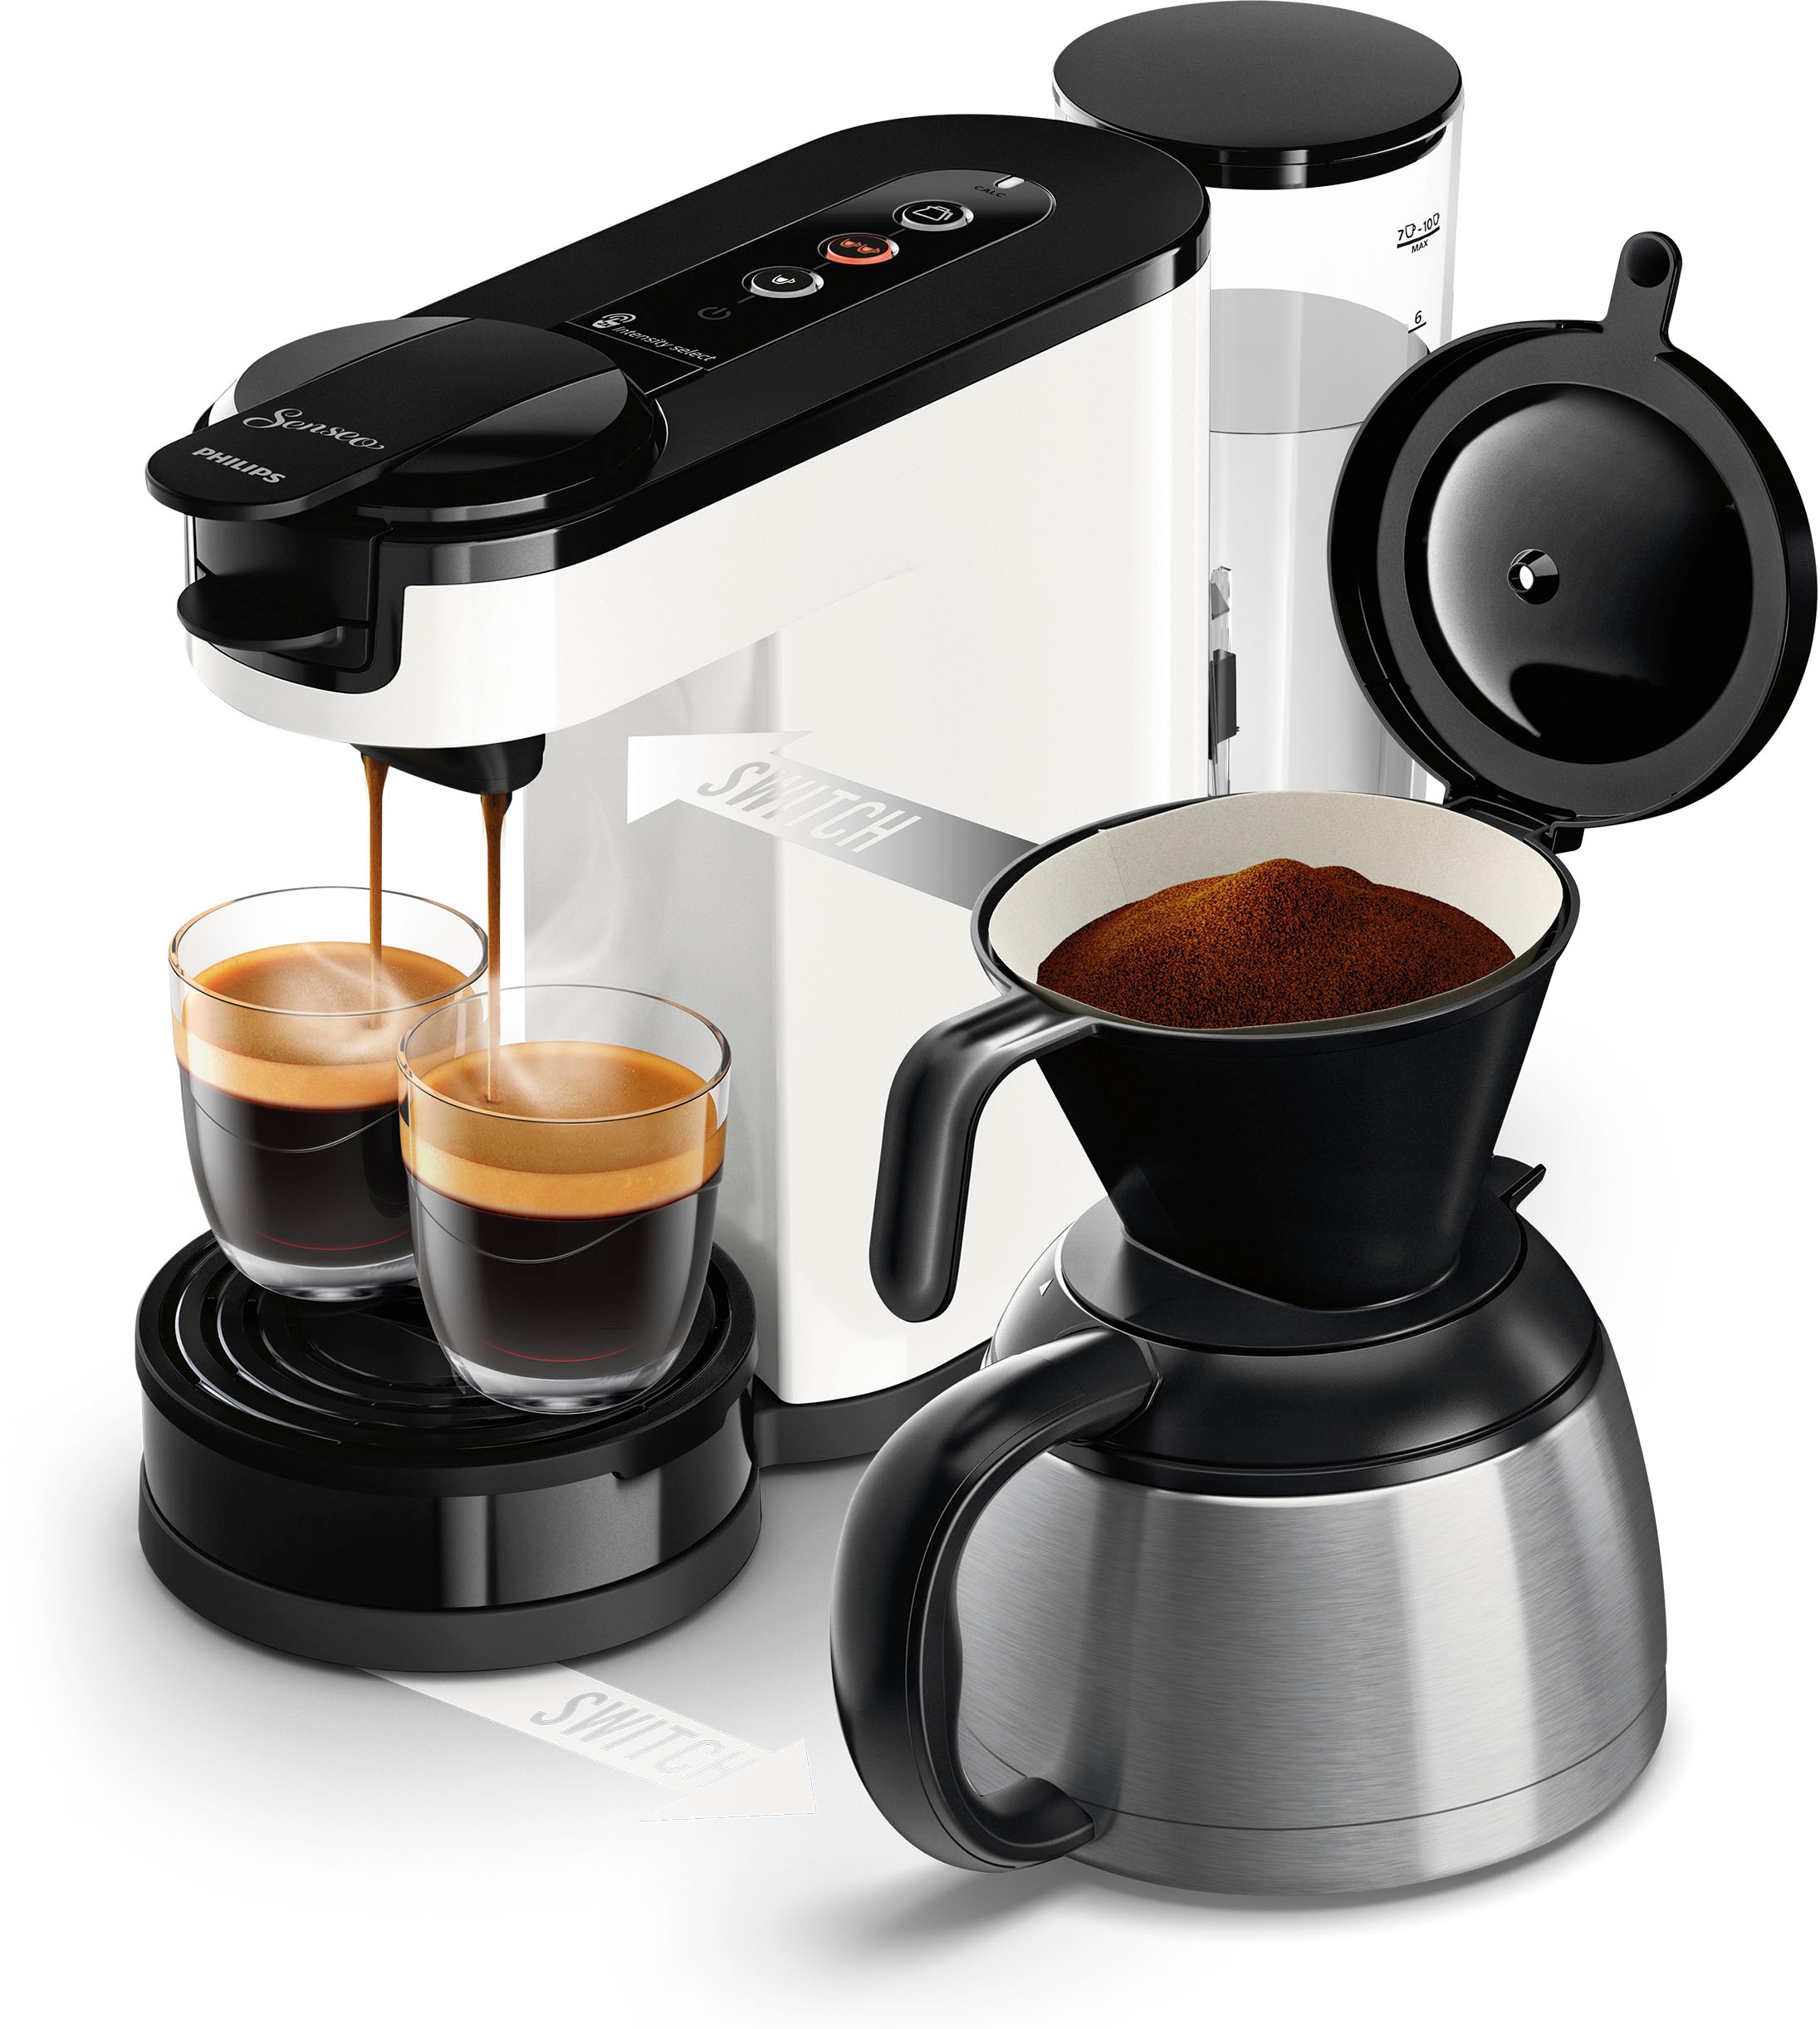 Philips Senseo Kaffeepadmaschine »Switch HD6592/04«, 1 l Kaffeekanne, inkl. Kaffeepaddose im Wert von 9,90 € UVP